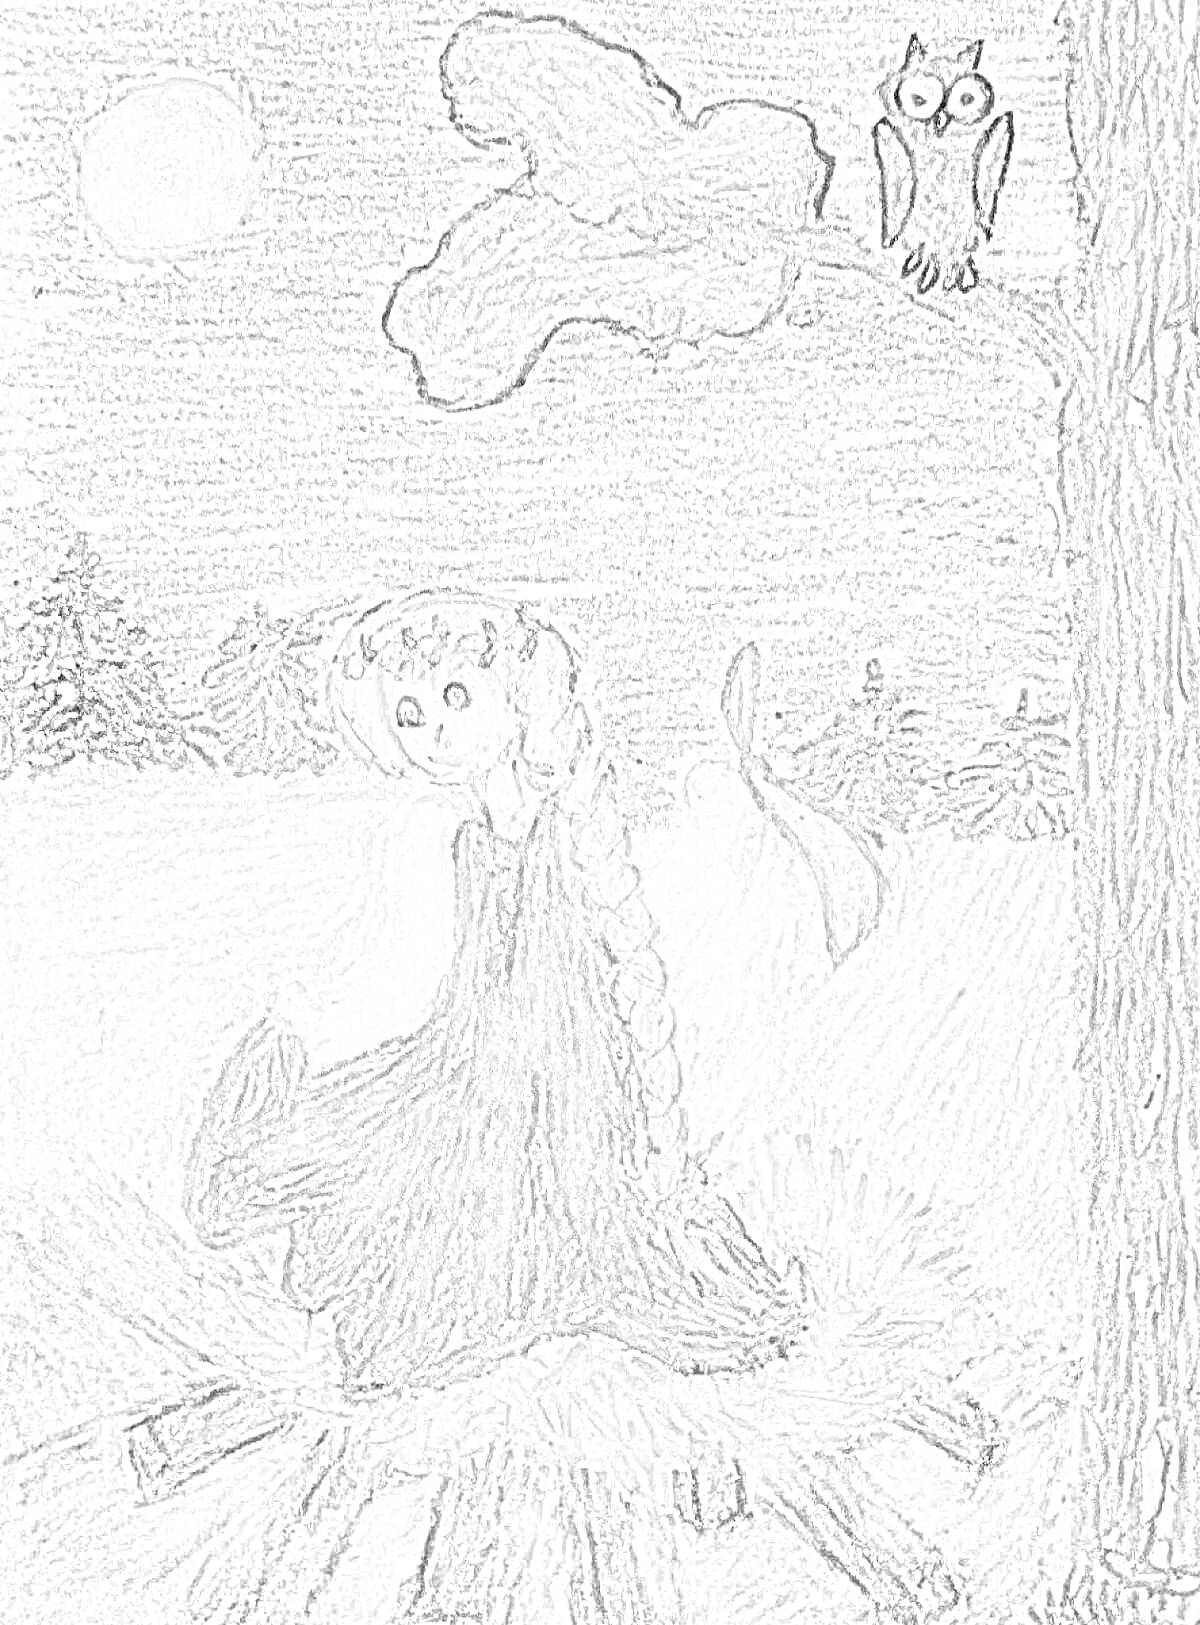 Девушка с длинной косой в платье стоит в круге света, кругом темный лес с совой на дереве, высоко на небе светит луна